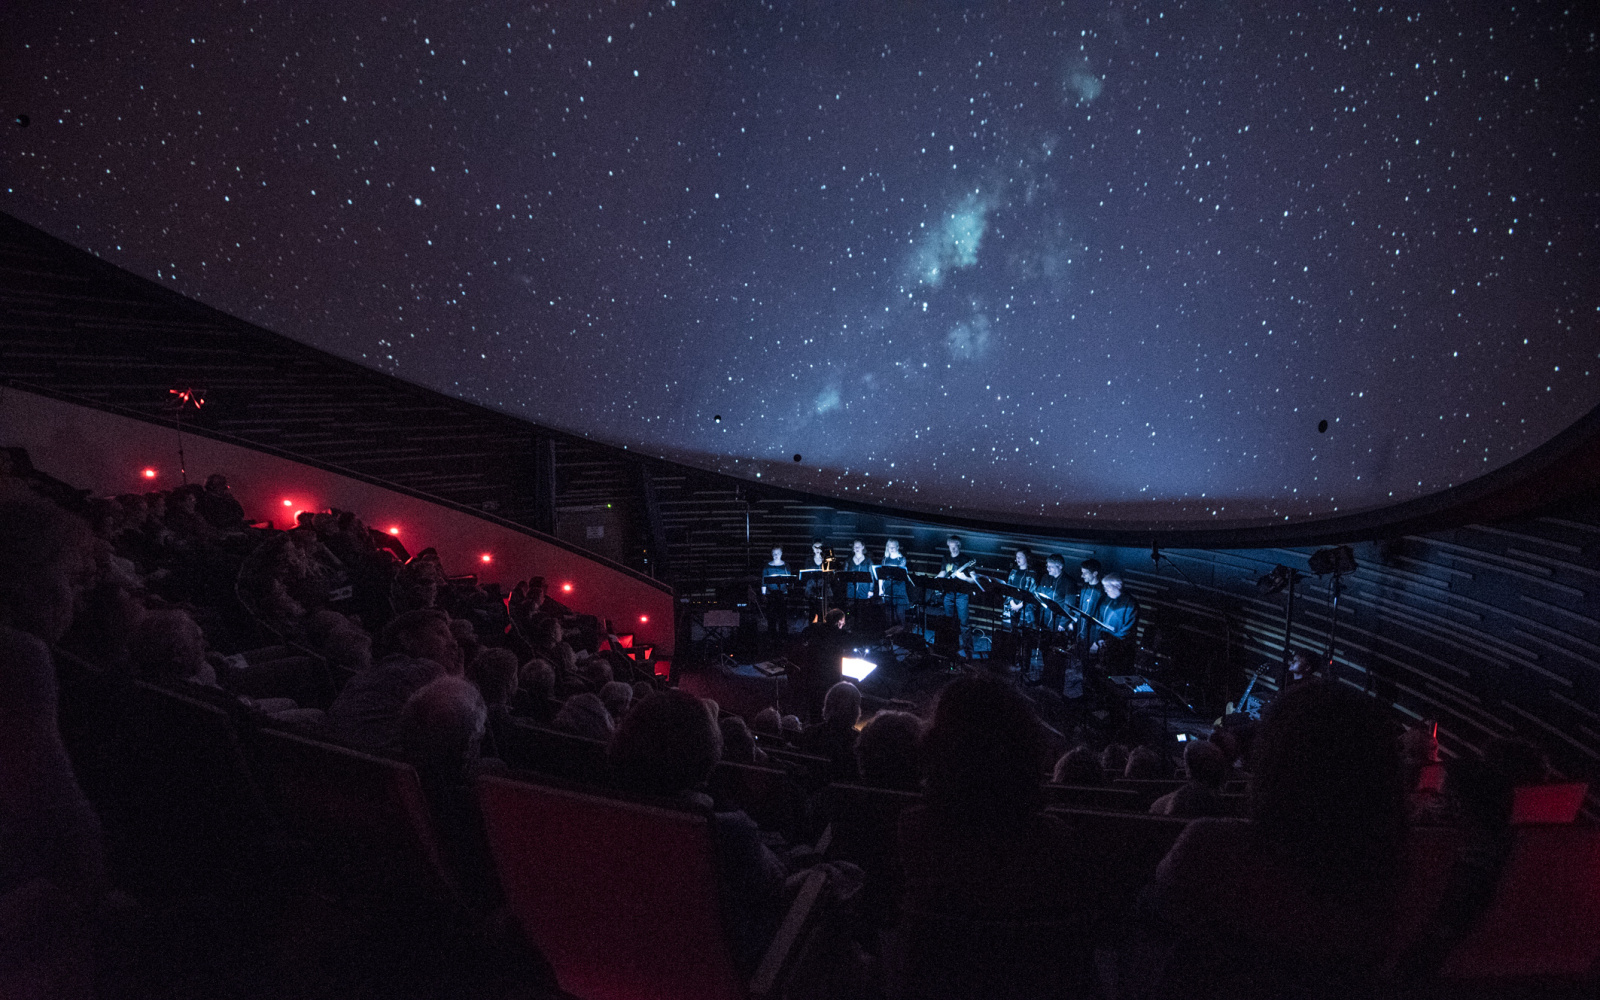 Das KlangForum auf der Bühne vor einem projizierten Sternenhimmel